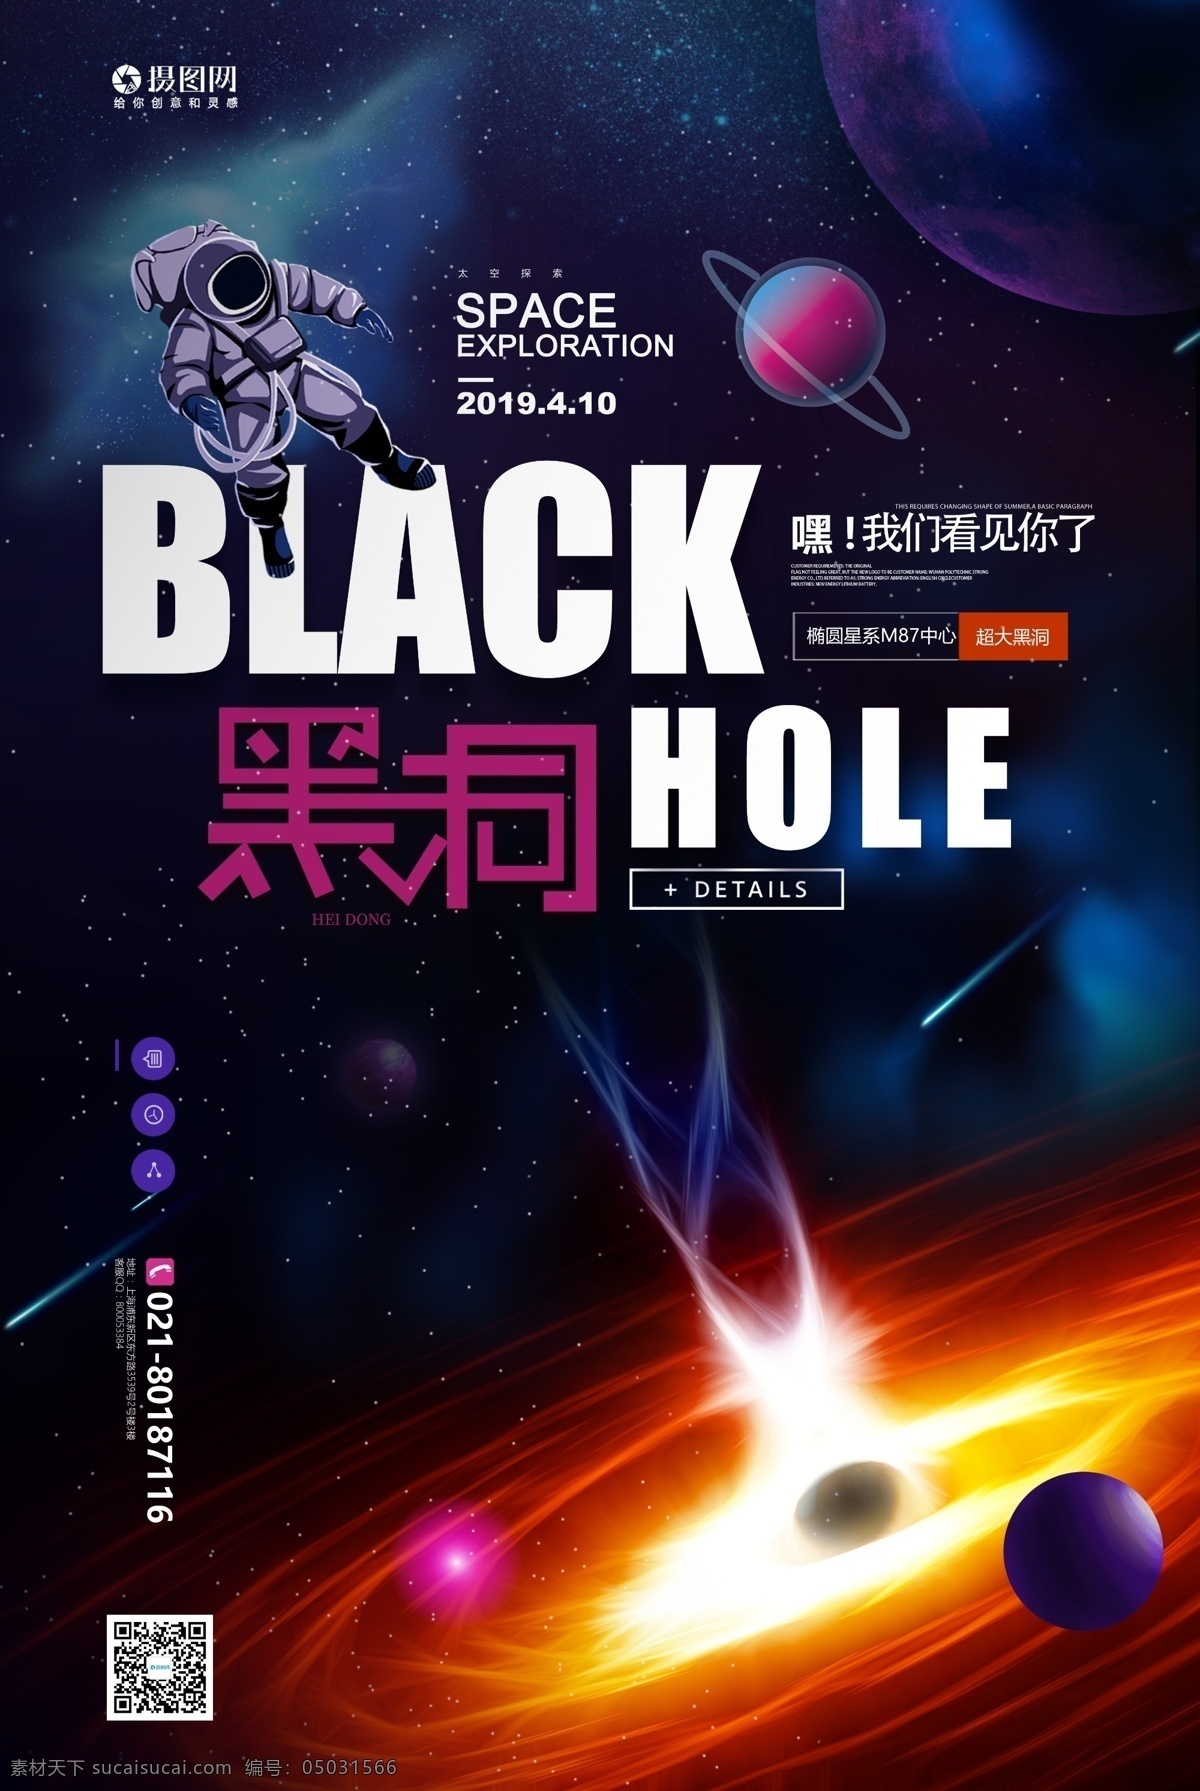 科技 黑洞 宣传海报 探索黑洞 照片 黑洞照片 世界首张照片 宇宙 星空 探索宇宙 科技海报